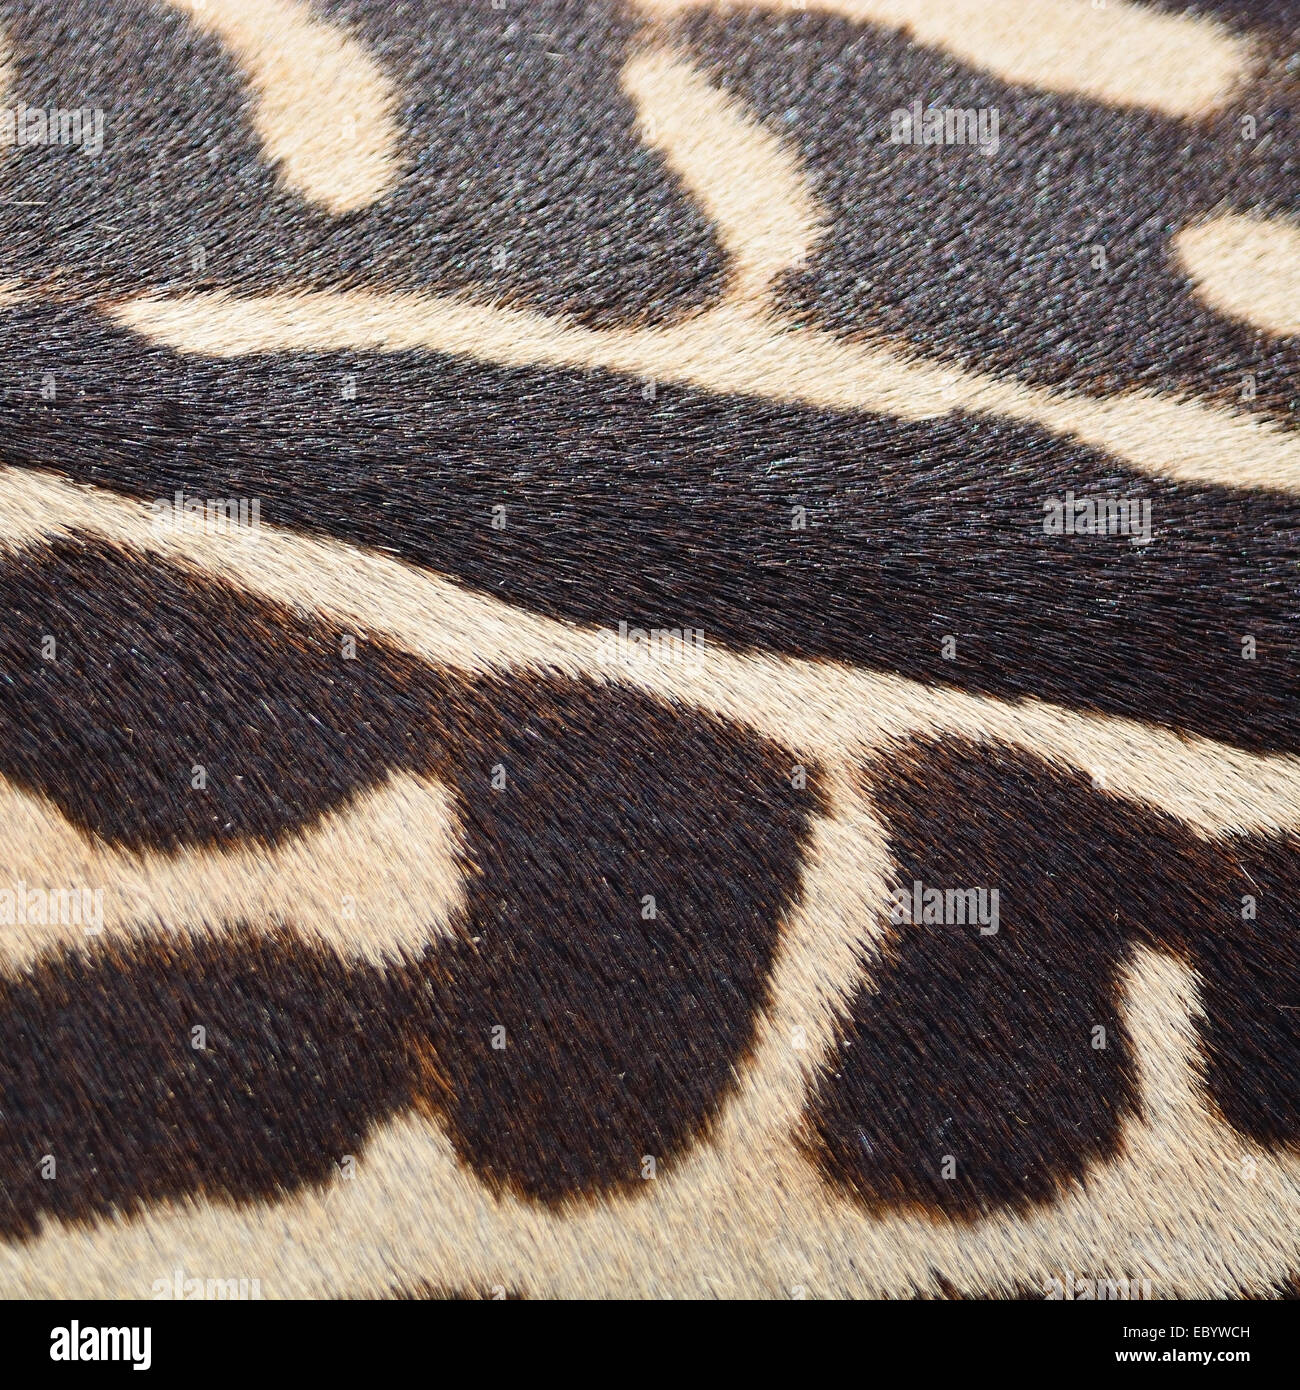 Pelle di animale, comune o Zebra Burchell's Zebra (Equus burchelli) pelle, striped texture di sfondo Foto Stock